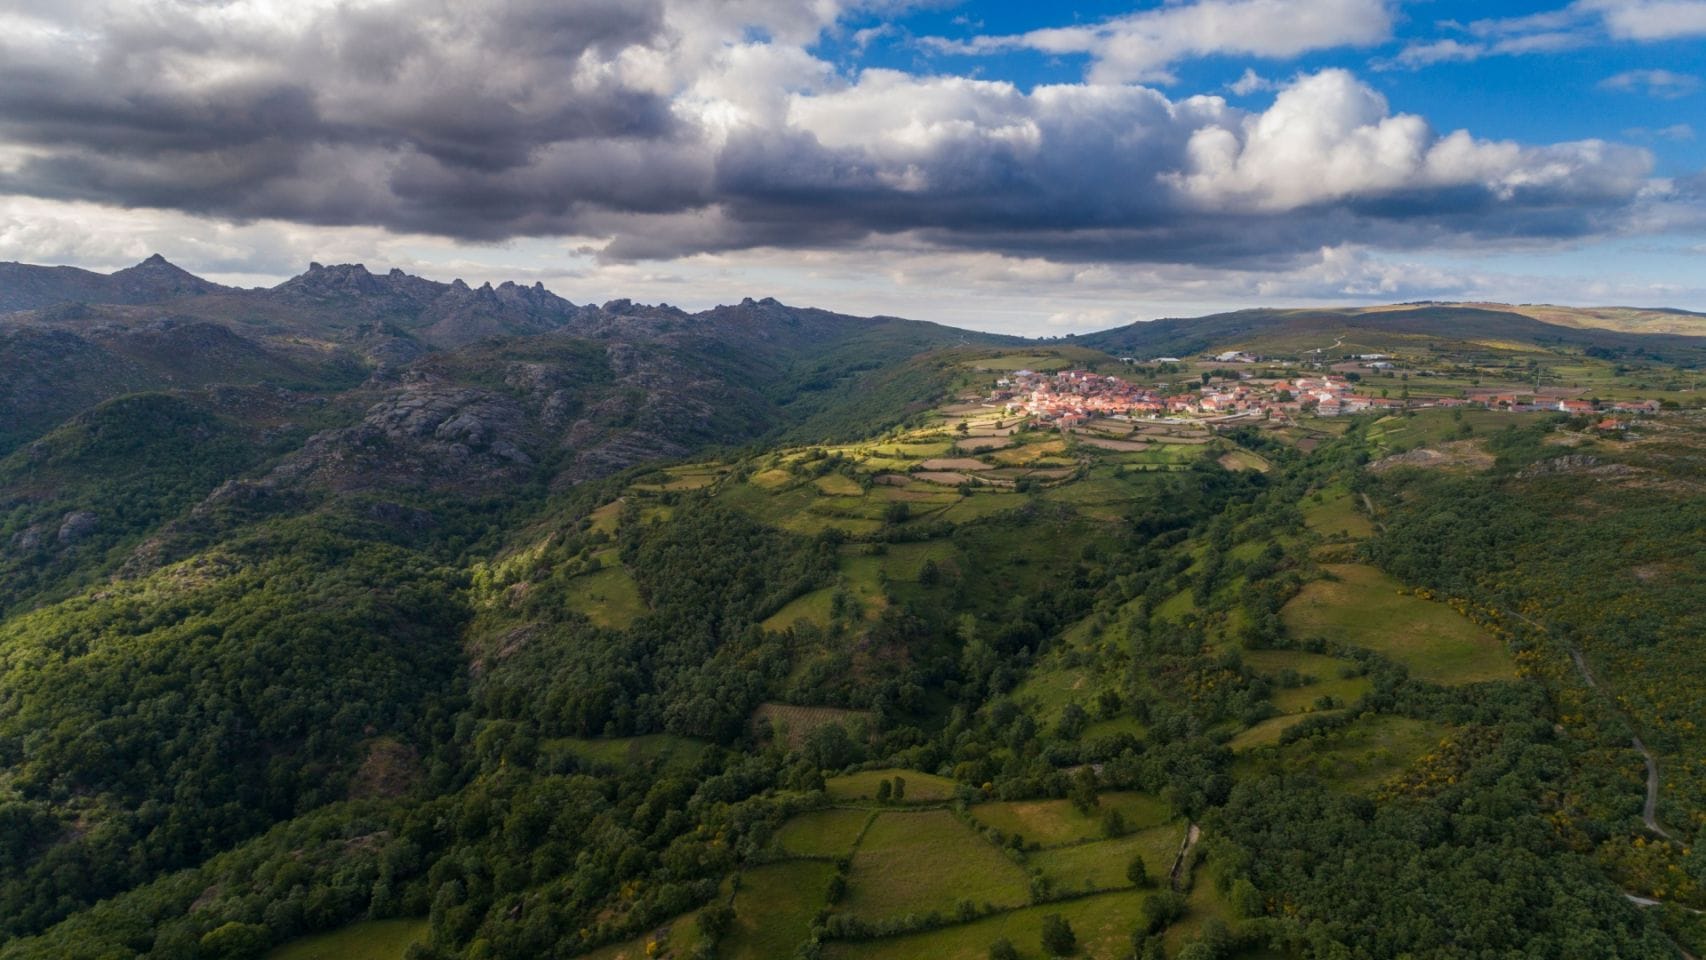 Vista aérea del valle y las montañas del Gêres, en Portugal.